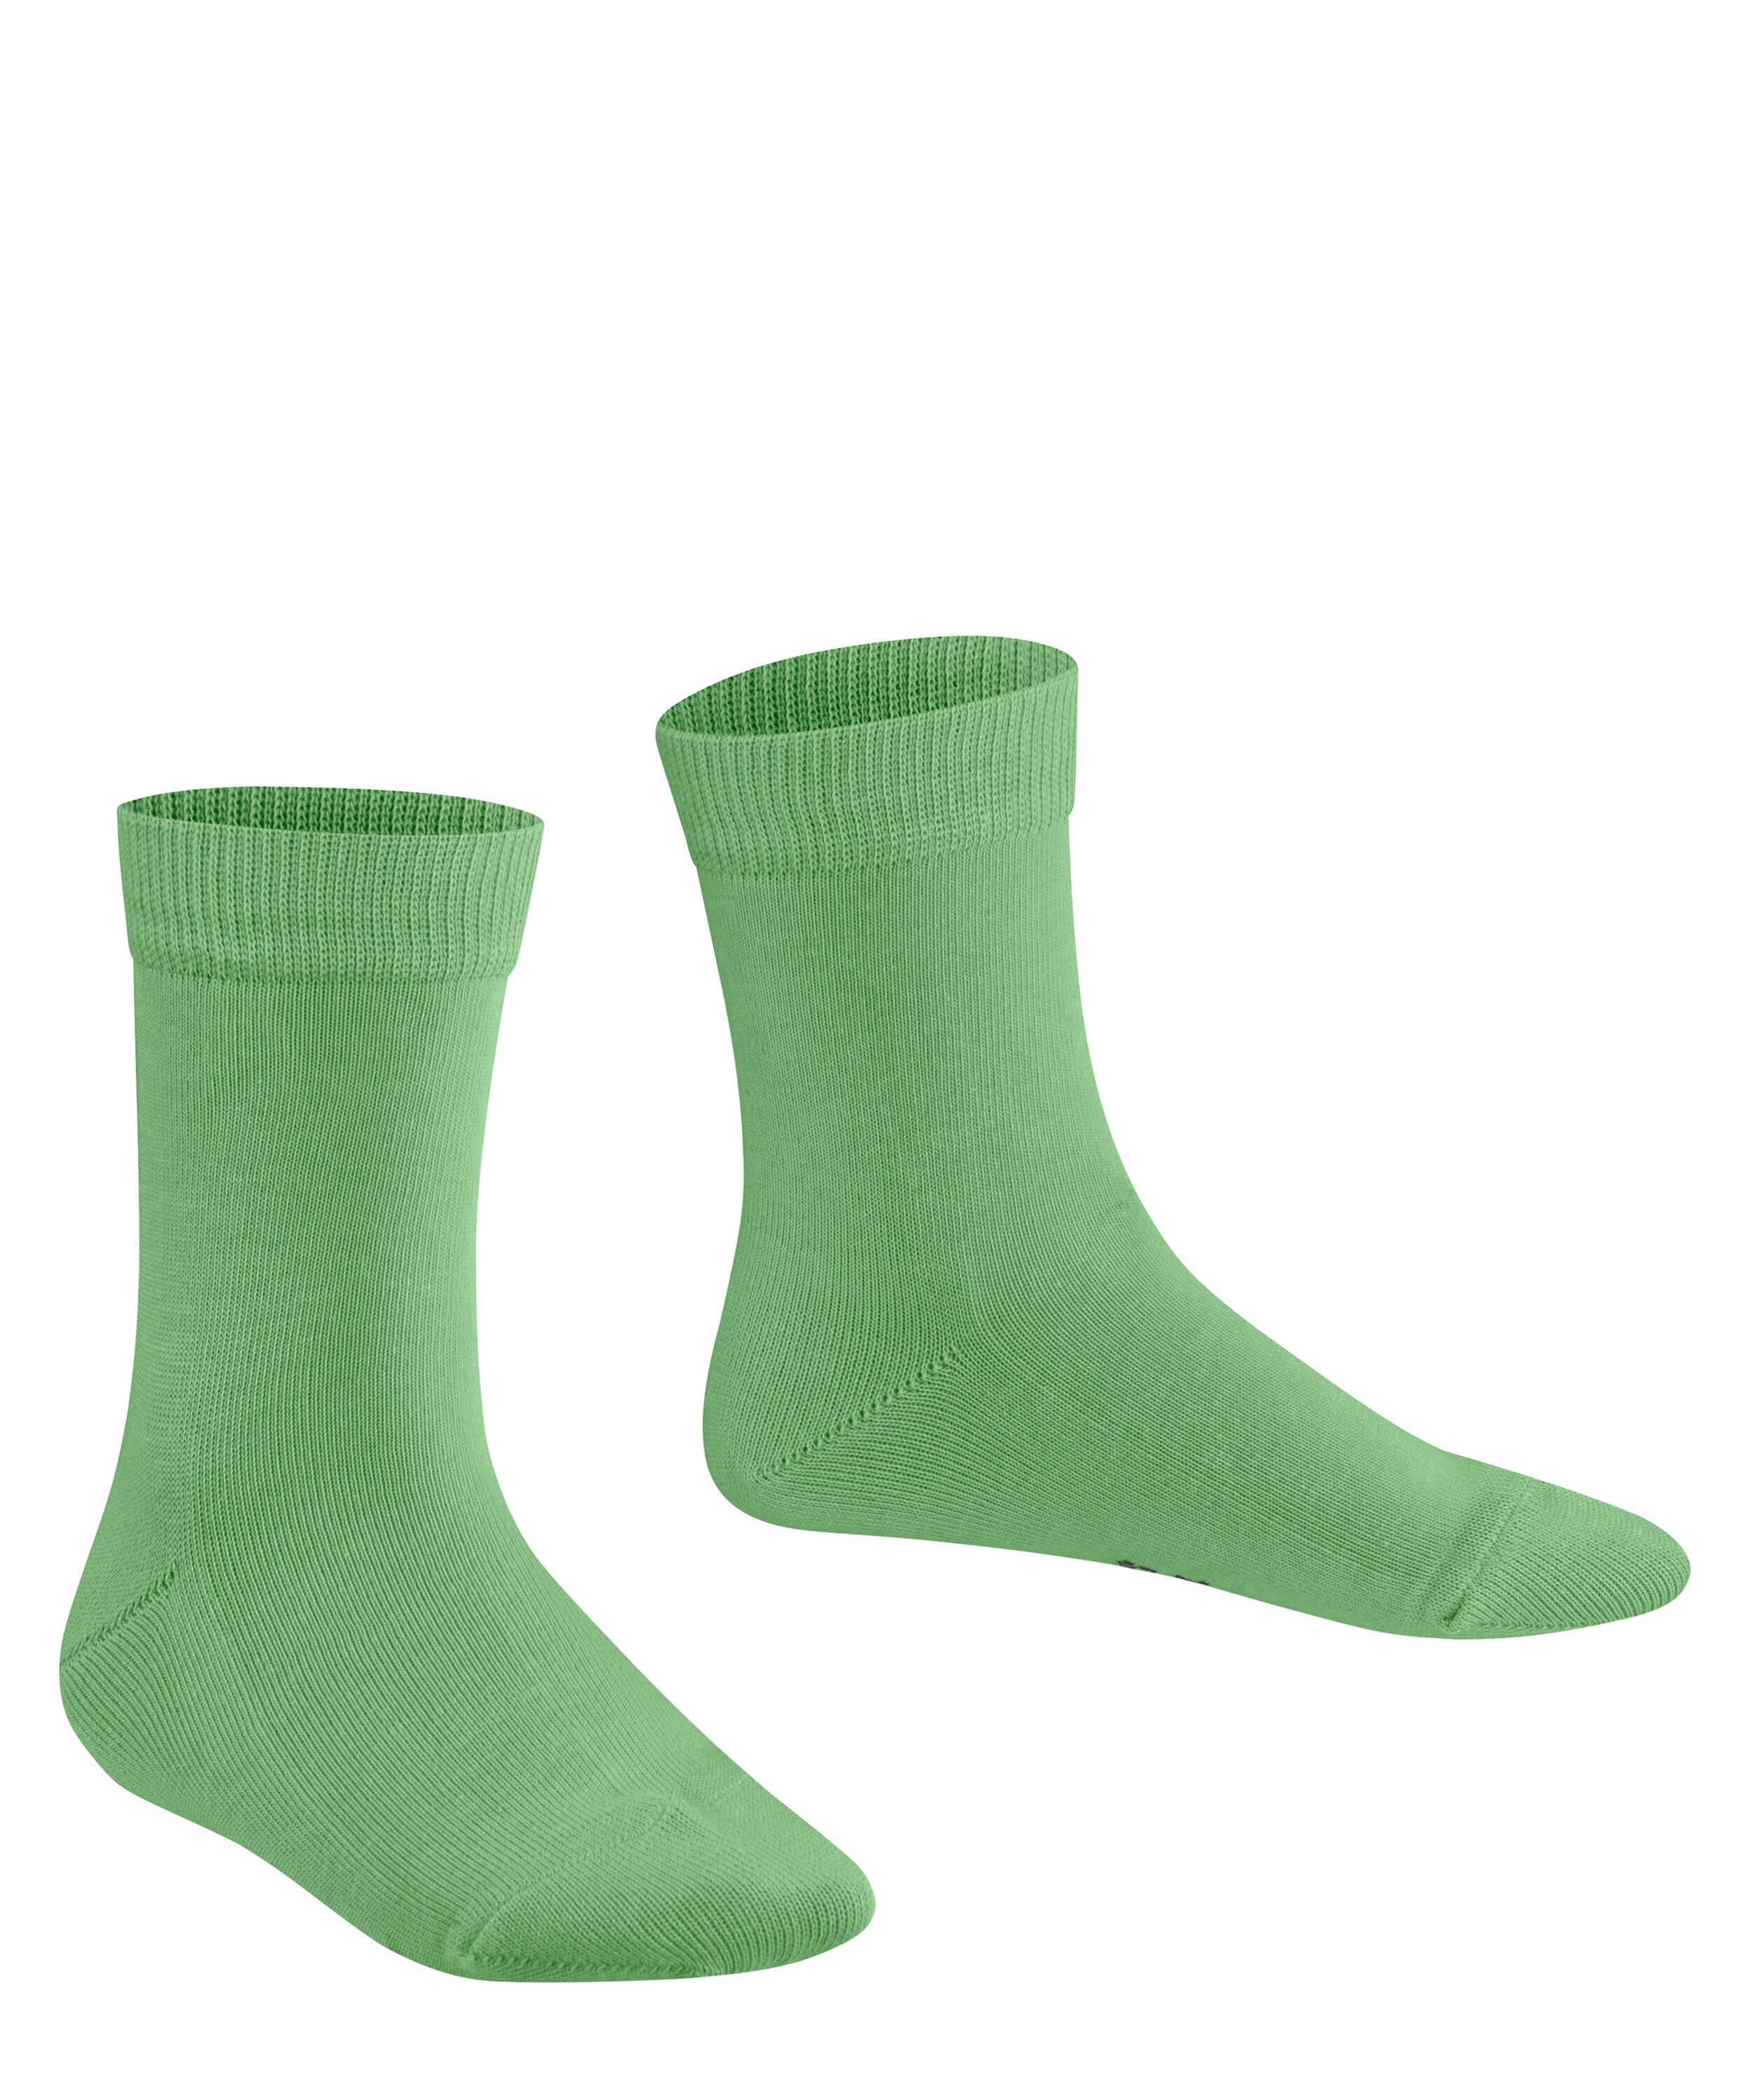 (7486) FALKE Socken Family (1-Paar) lizzardgreen